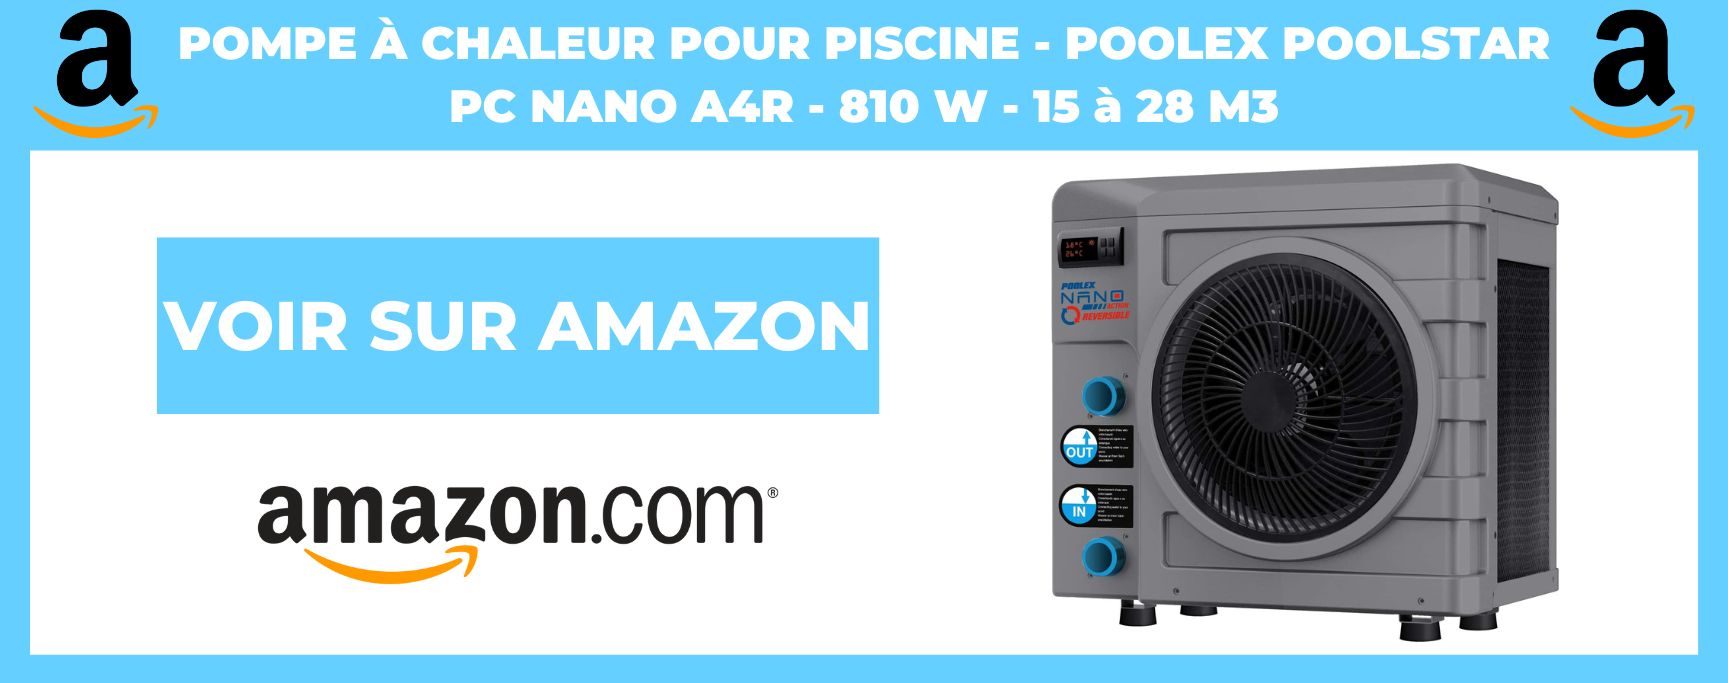 Pompe à Chaleur pour Piscine - Poolex Poolstar PC NANO A4R - 810 W - 15 à 28 m3